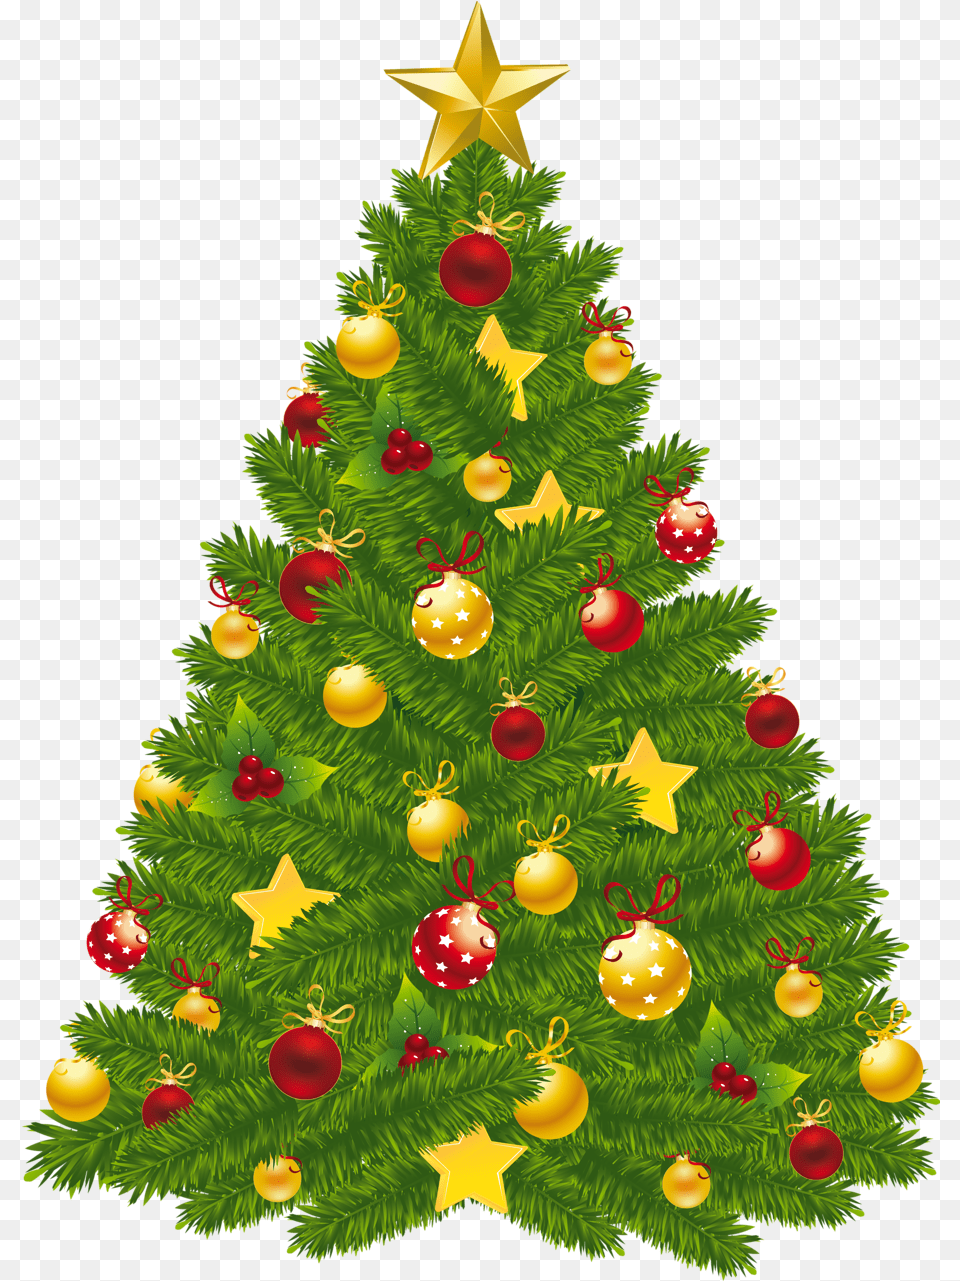 Xmas Christmas Tree Transparent Christmas Tree Transparent Plant, Christmas Decorations, Festival, Christmas Tree Free Png